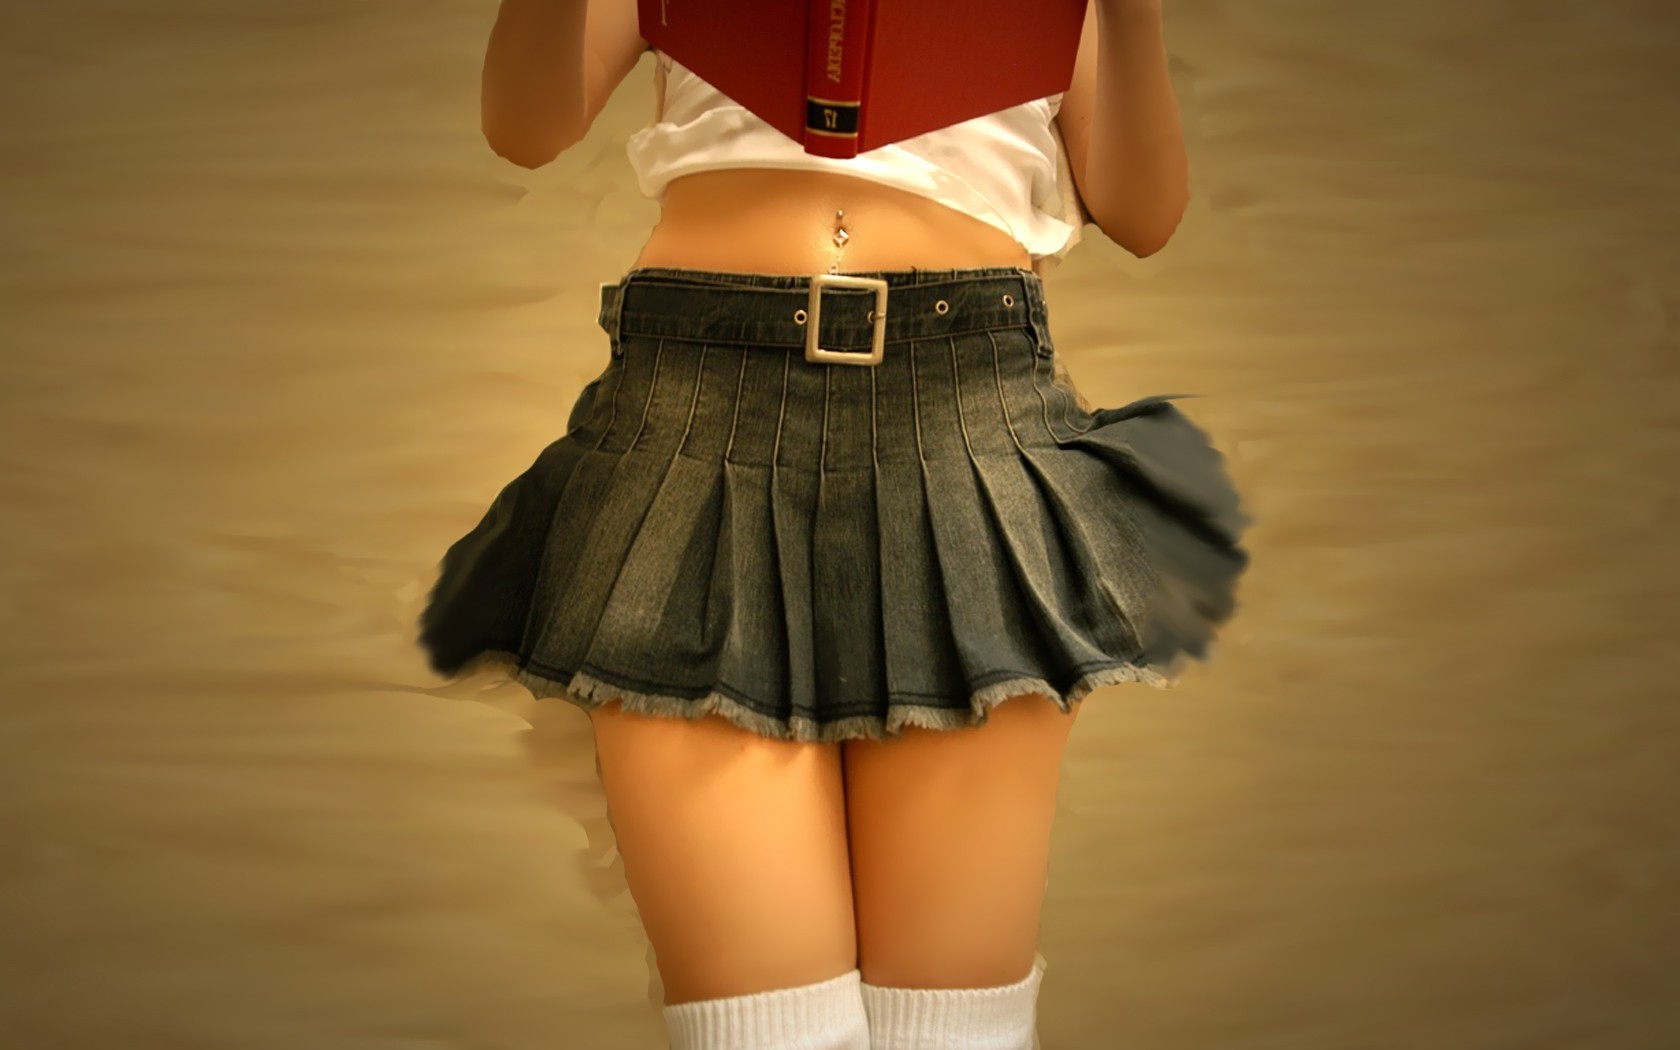 Little Girls In Short Skirts Sucking Dick